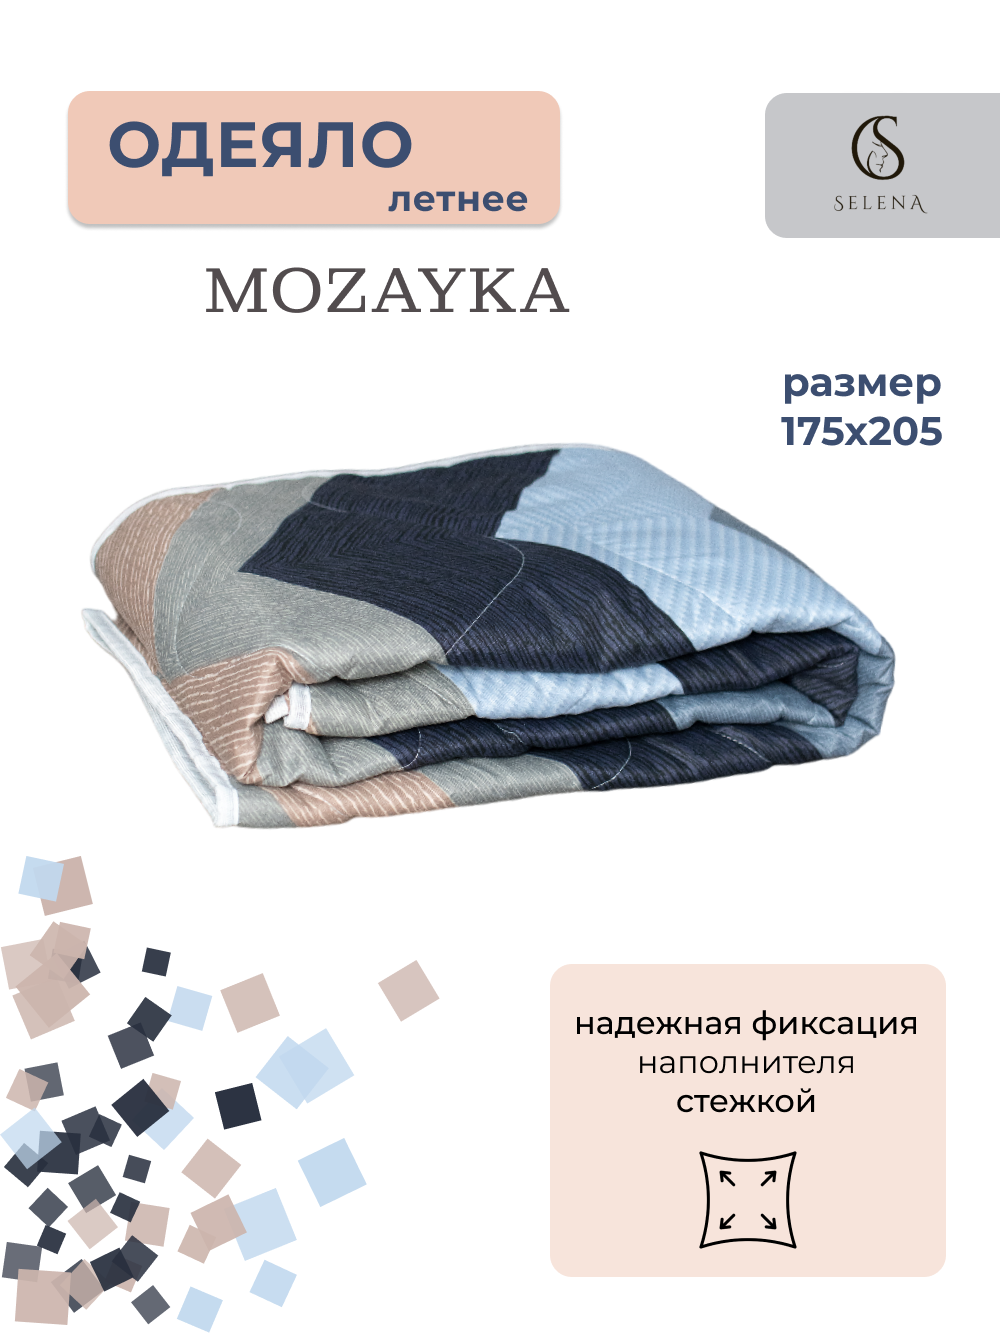 Одеяло SELENA Mozayka всесезонное, 2 спальный, 172х205см